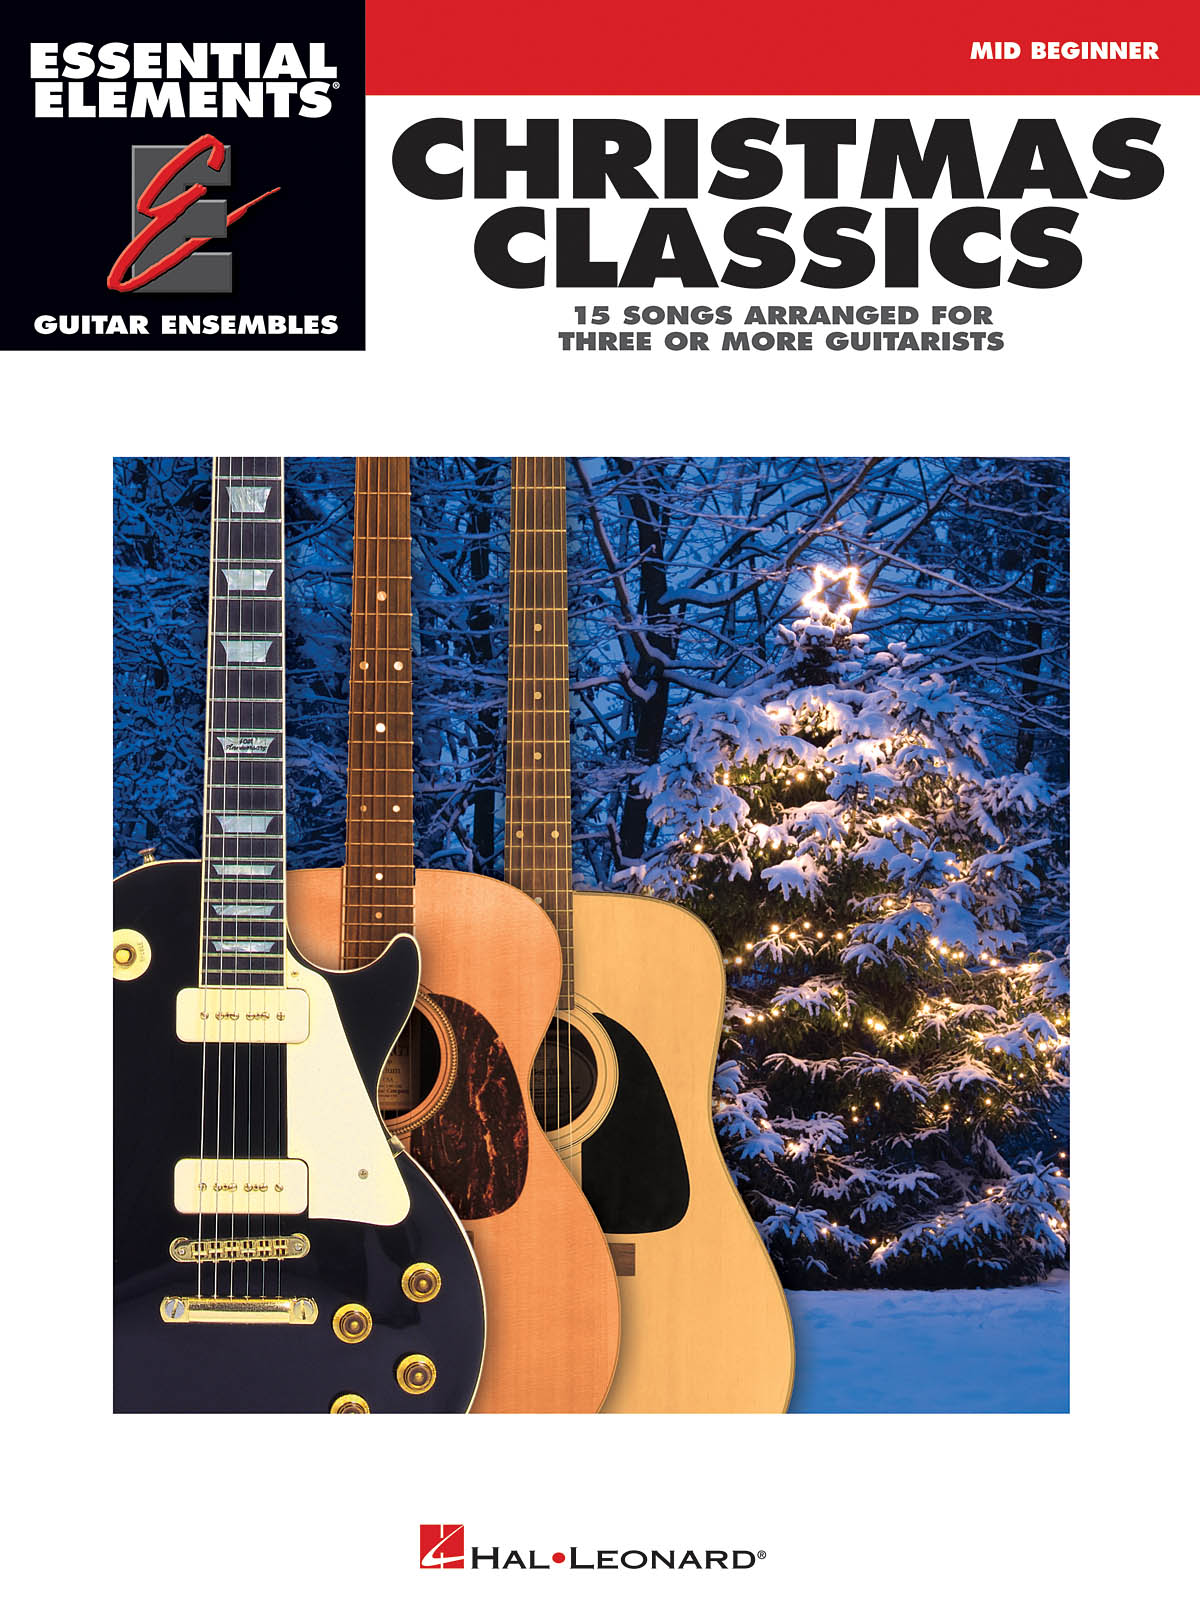 Essential Elements Guitar Ens - Christmas Classics - 15 vánočních koled pro 3 kytary